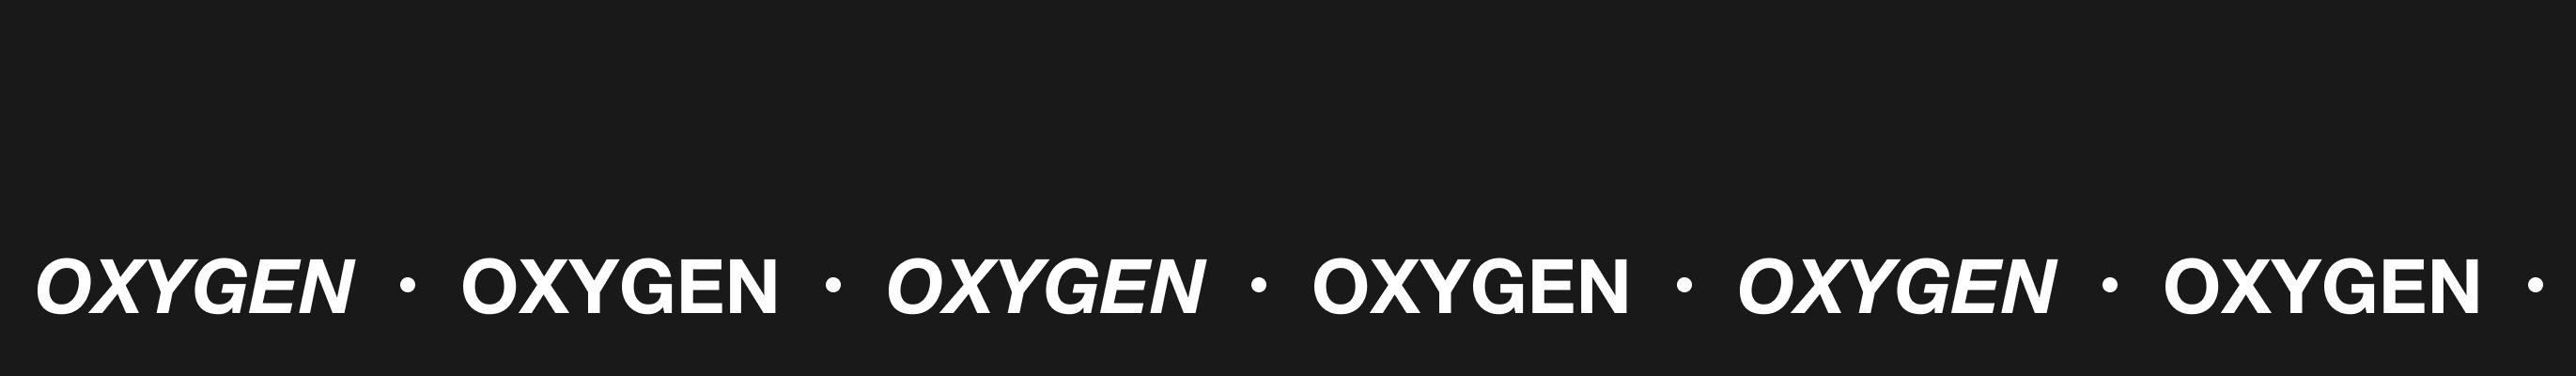 Dima Oxygen's profile banner